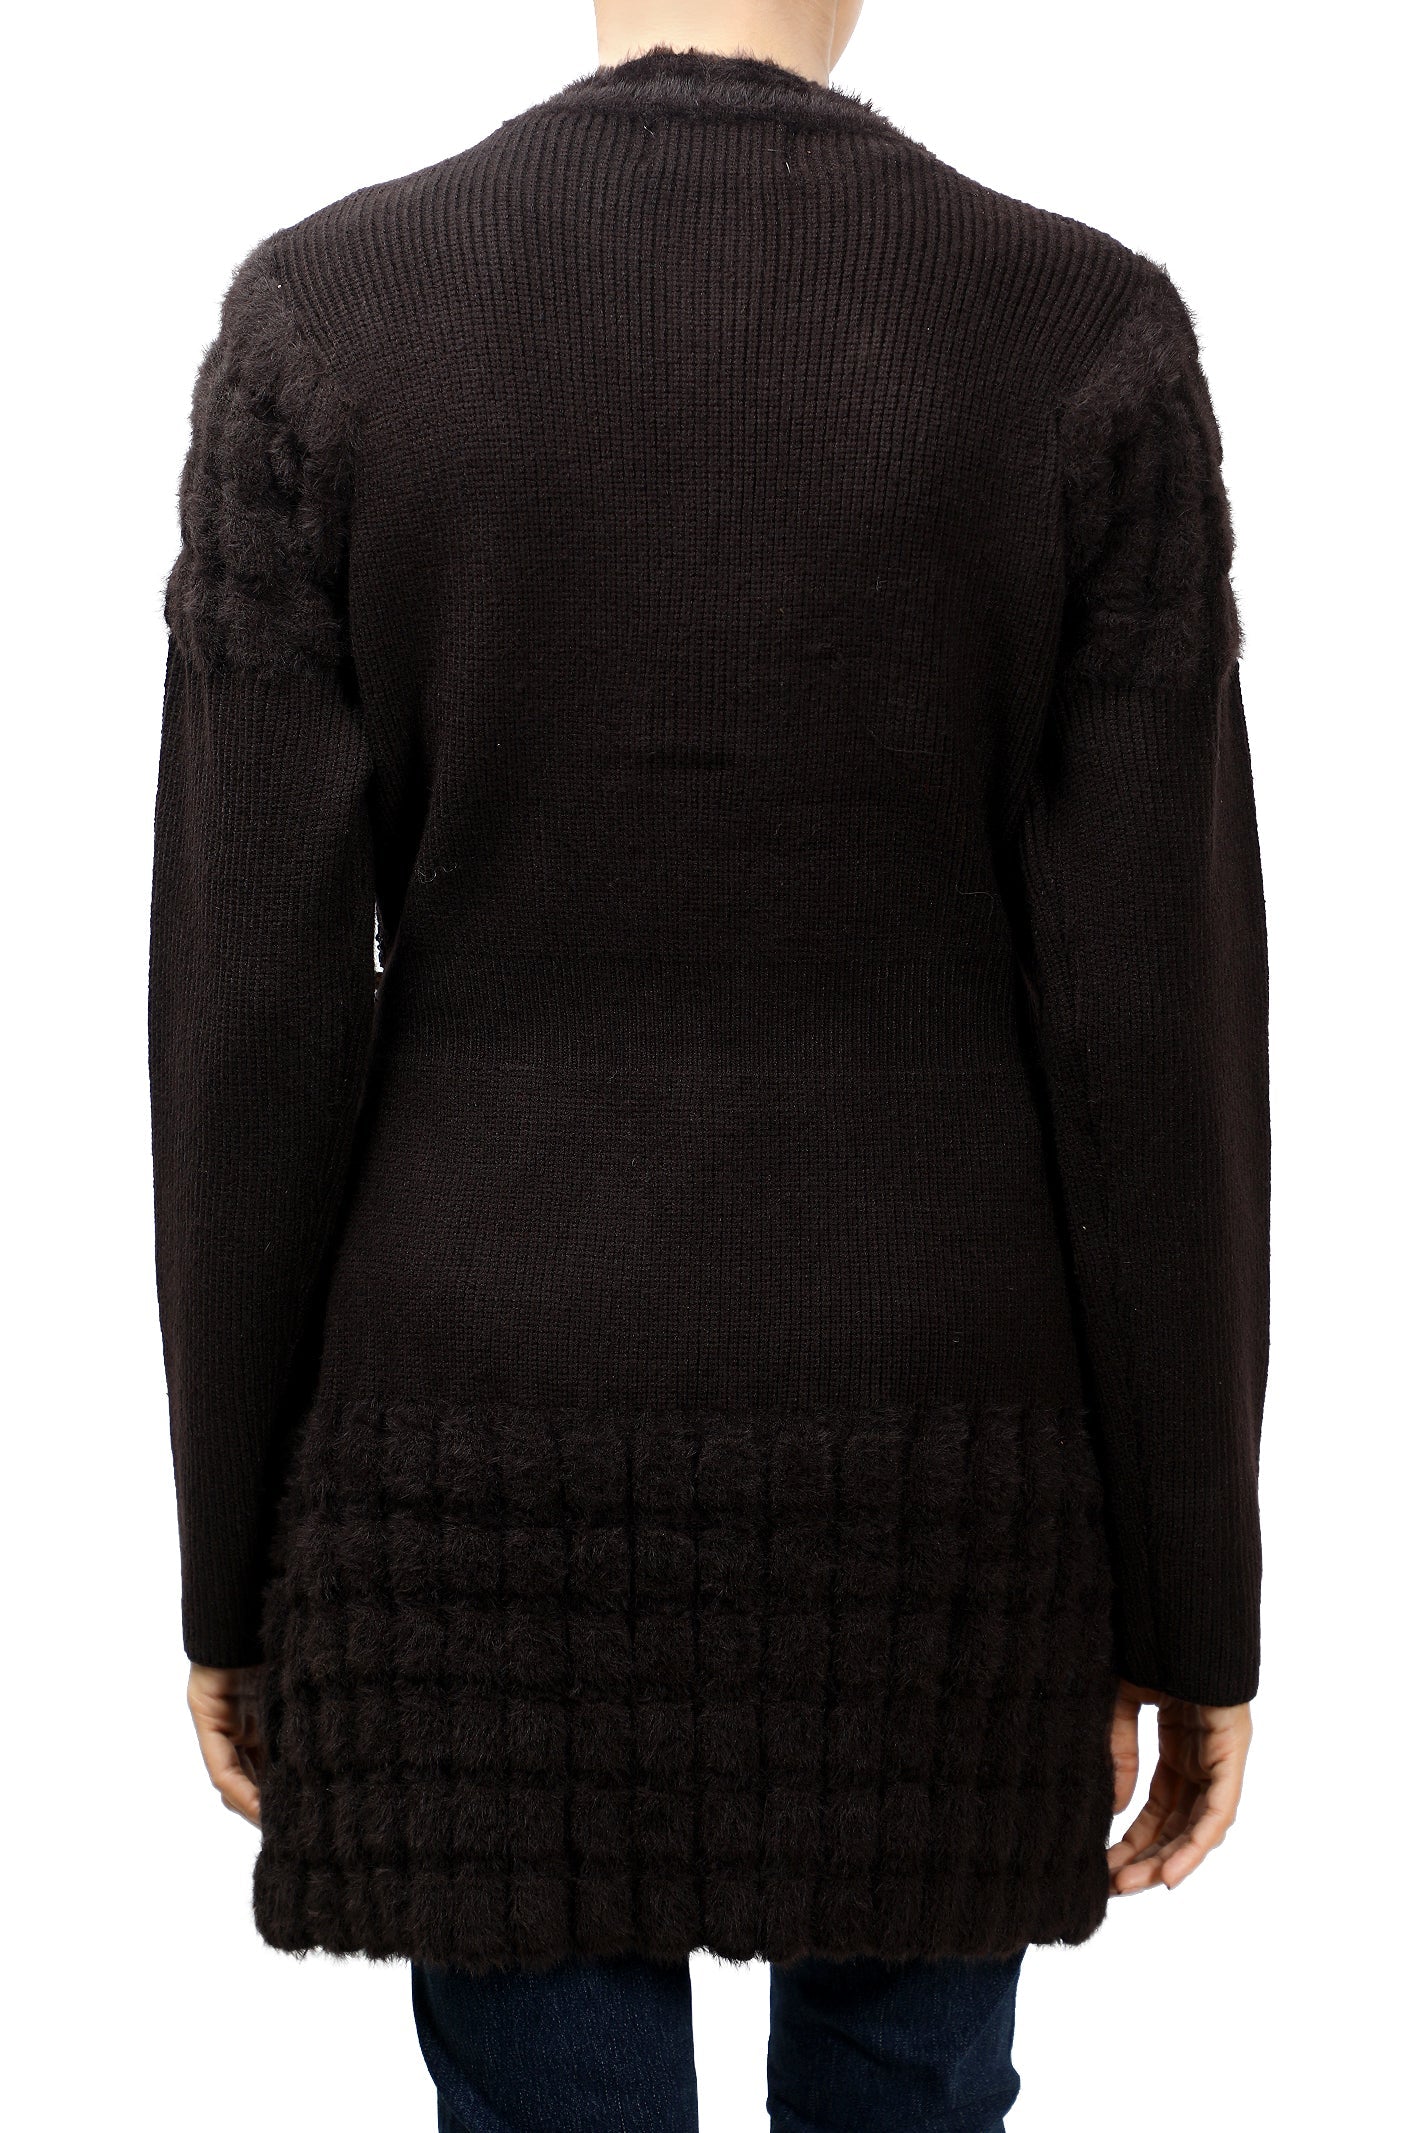 Ladies Sweater SKU: SL973-D-BROWN - Diners